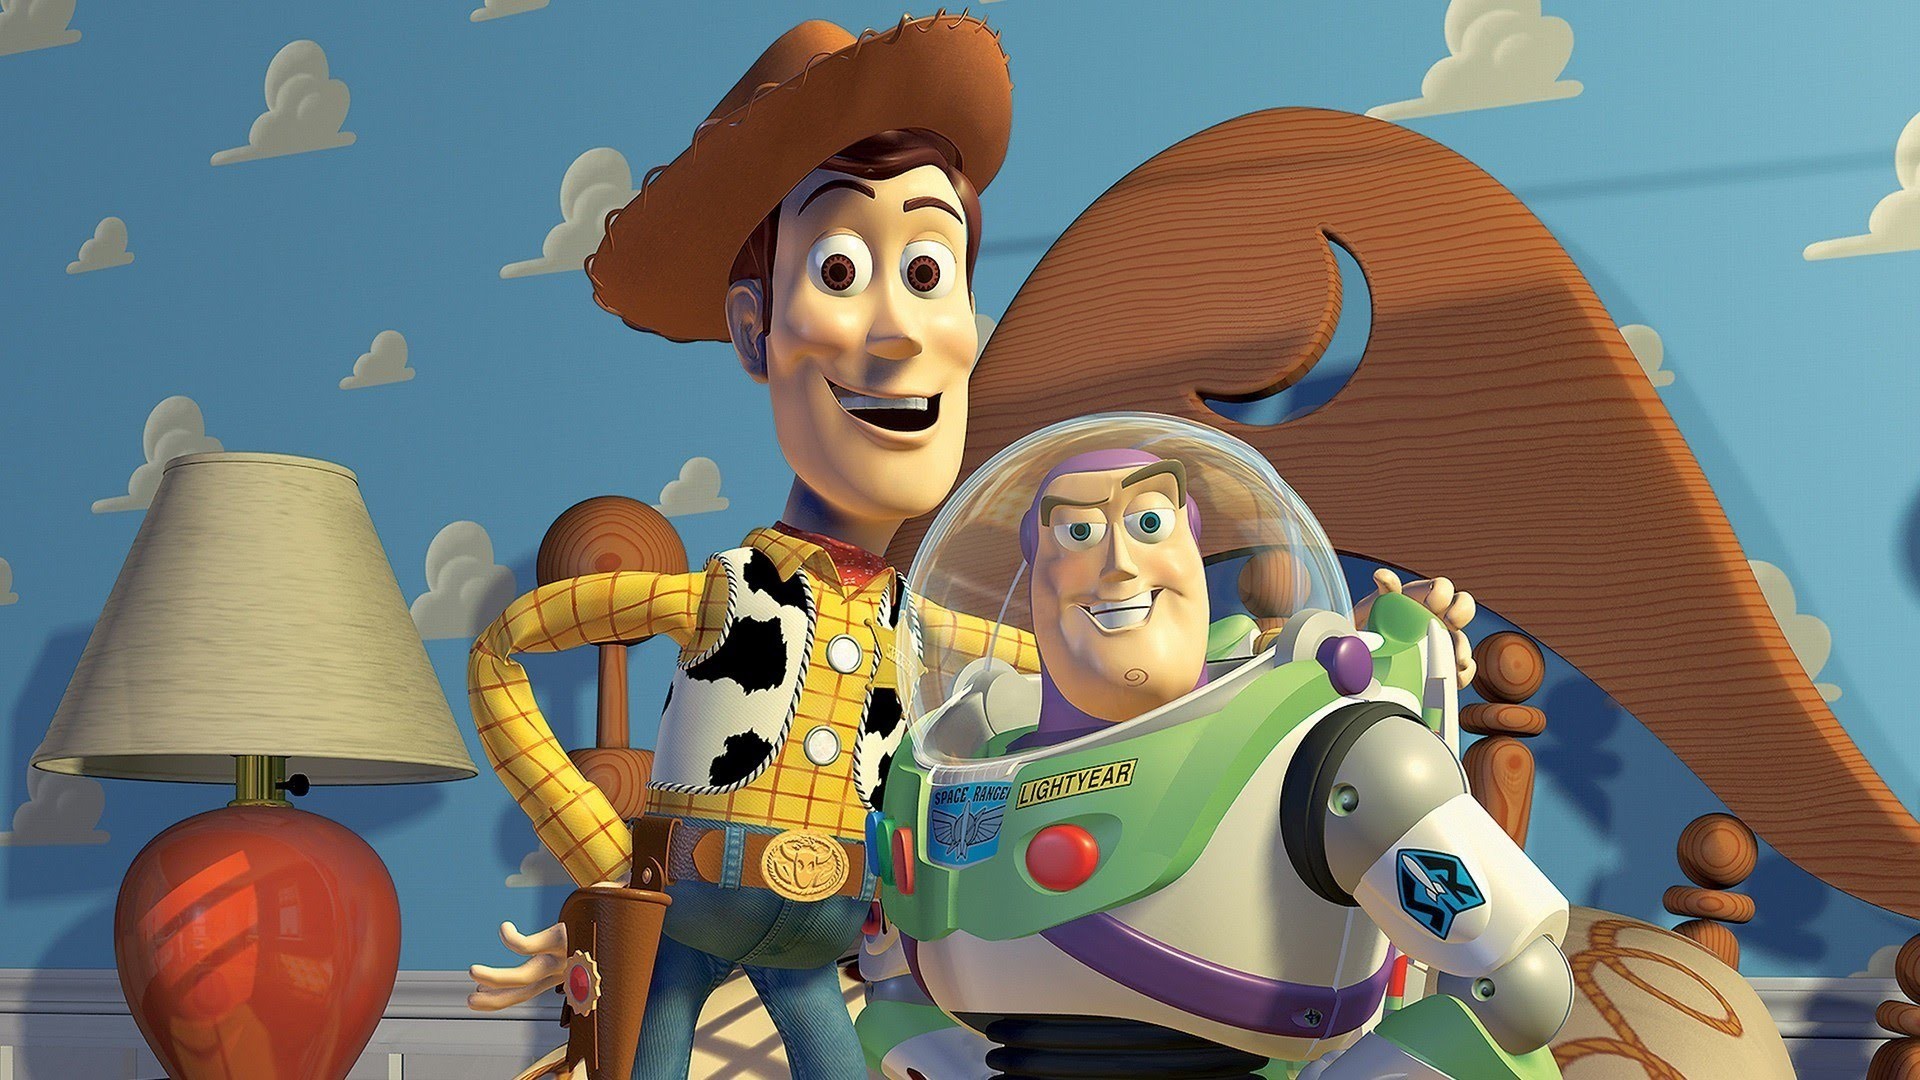 Toy Story foi um sucesso de crítica e público, ganhando duas continuações - uma terceira será lançada nos próximos anos (Foto: Divulgação)